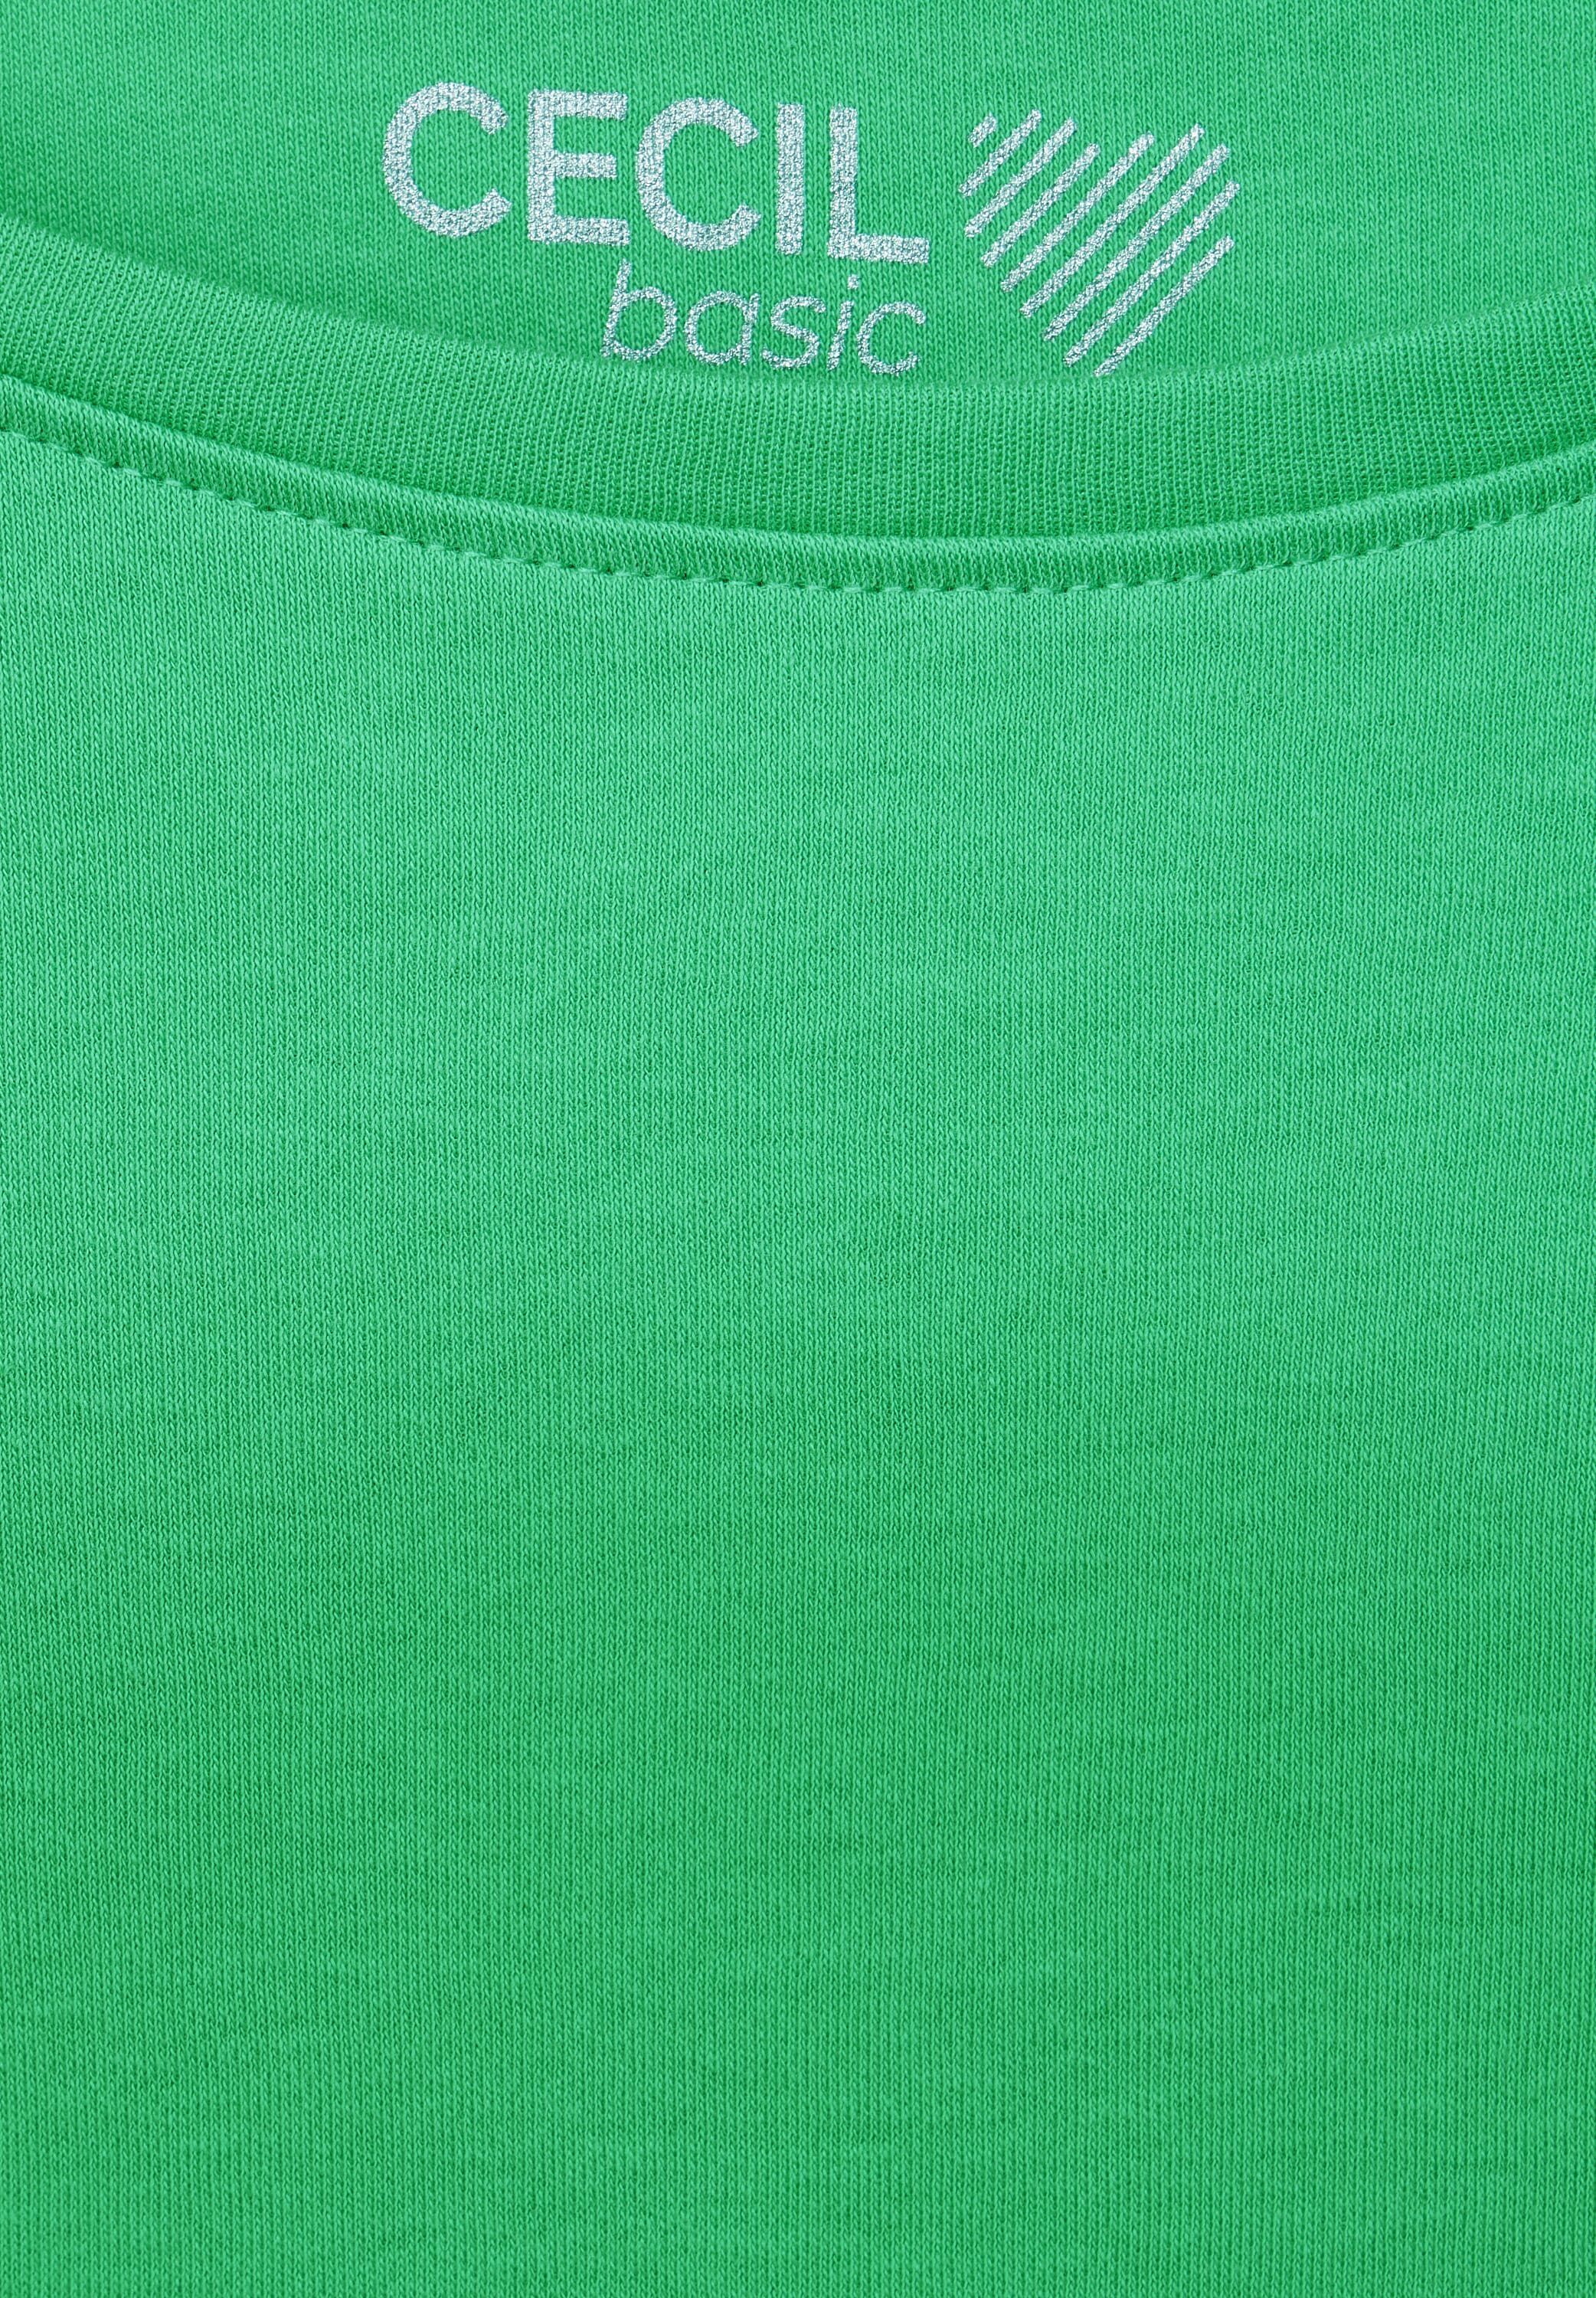 Cecil 3/4-Arm-Shirt, mit U-Boot-Ausschnitt online bestellen | BAUR